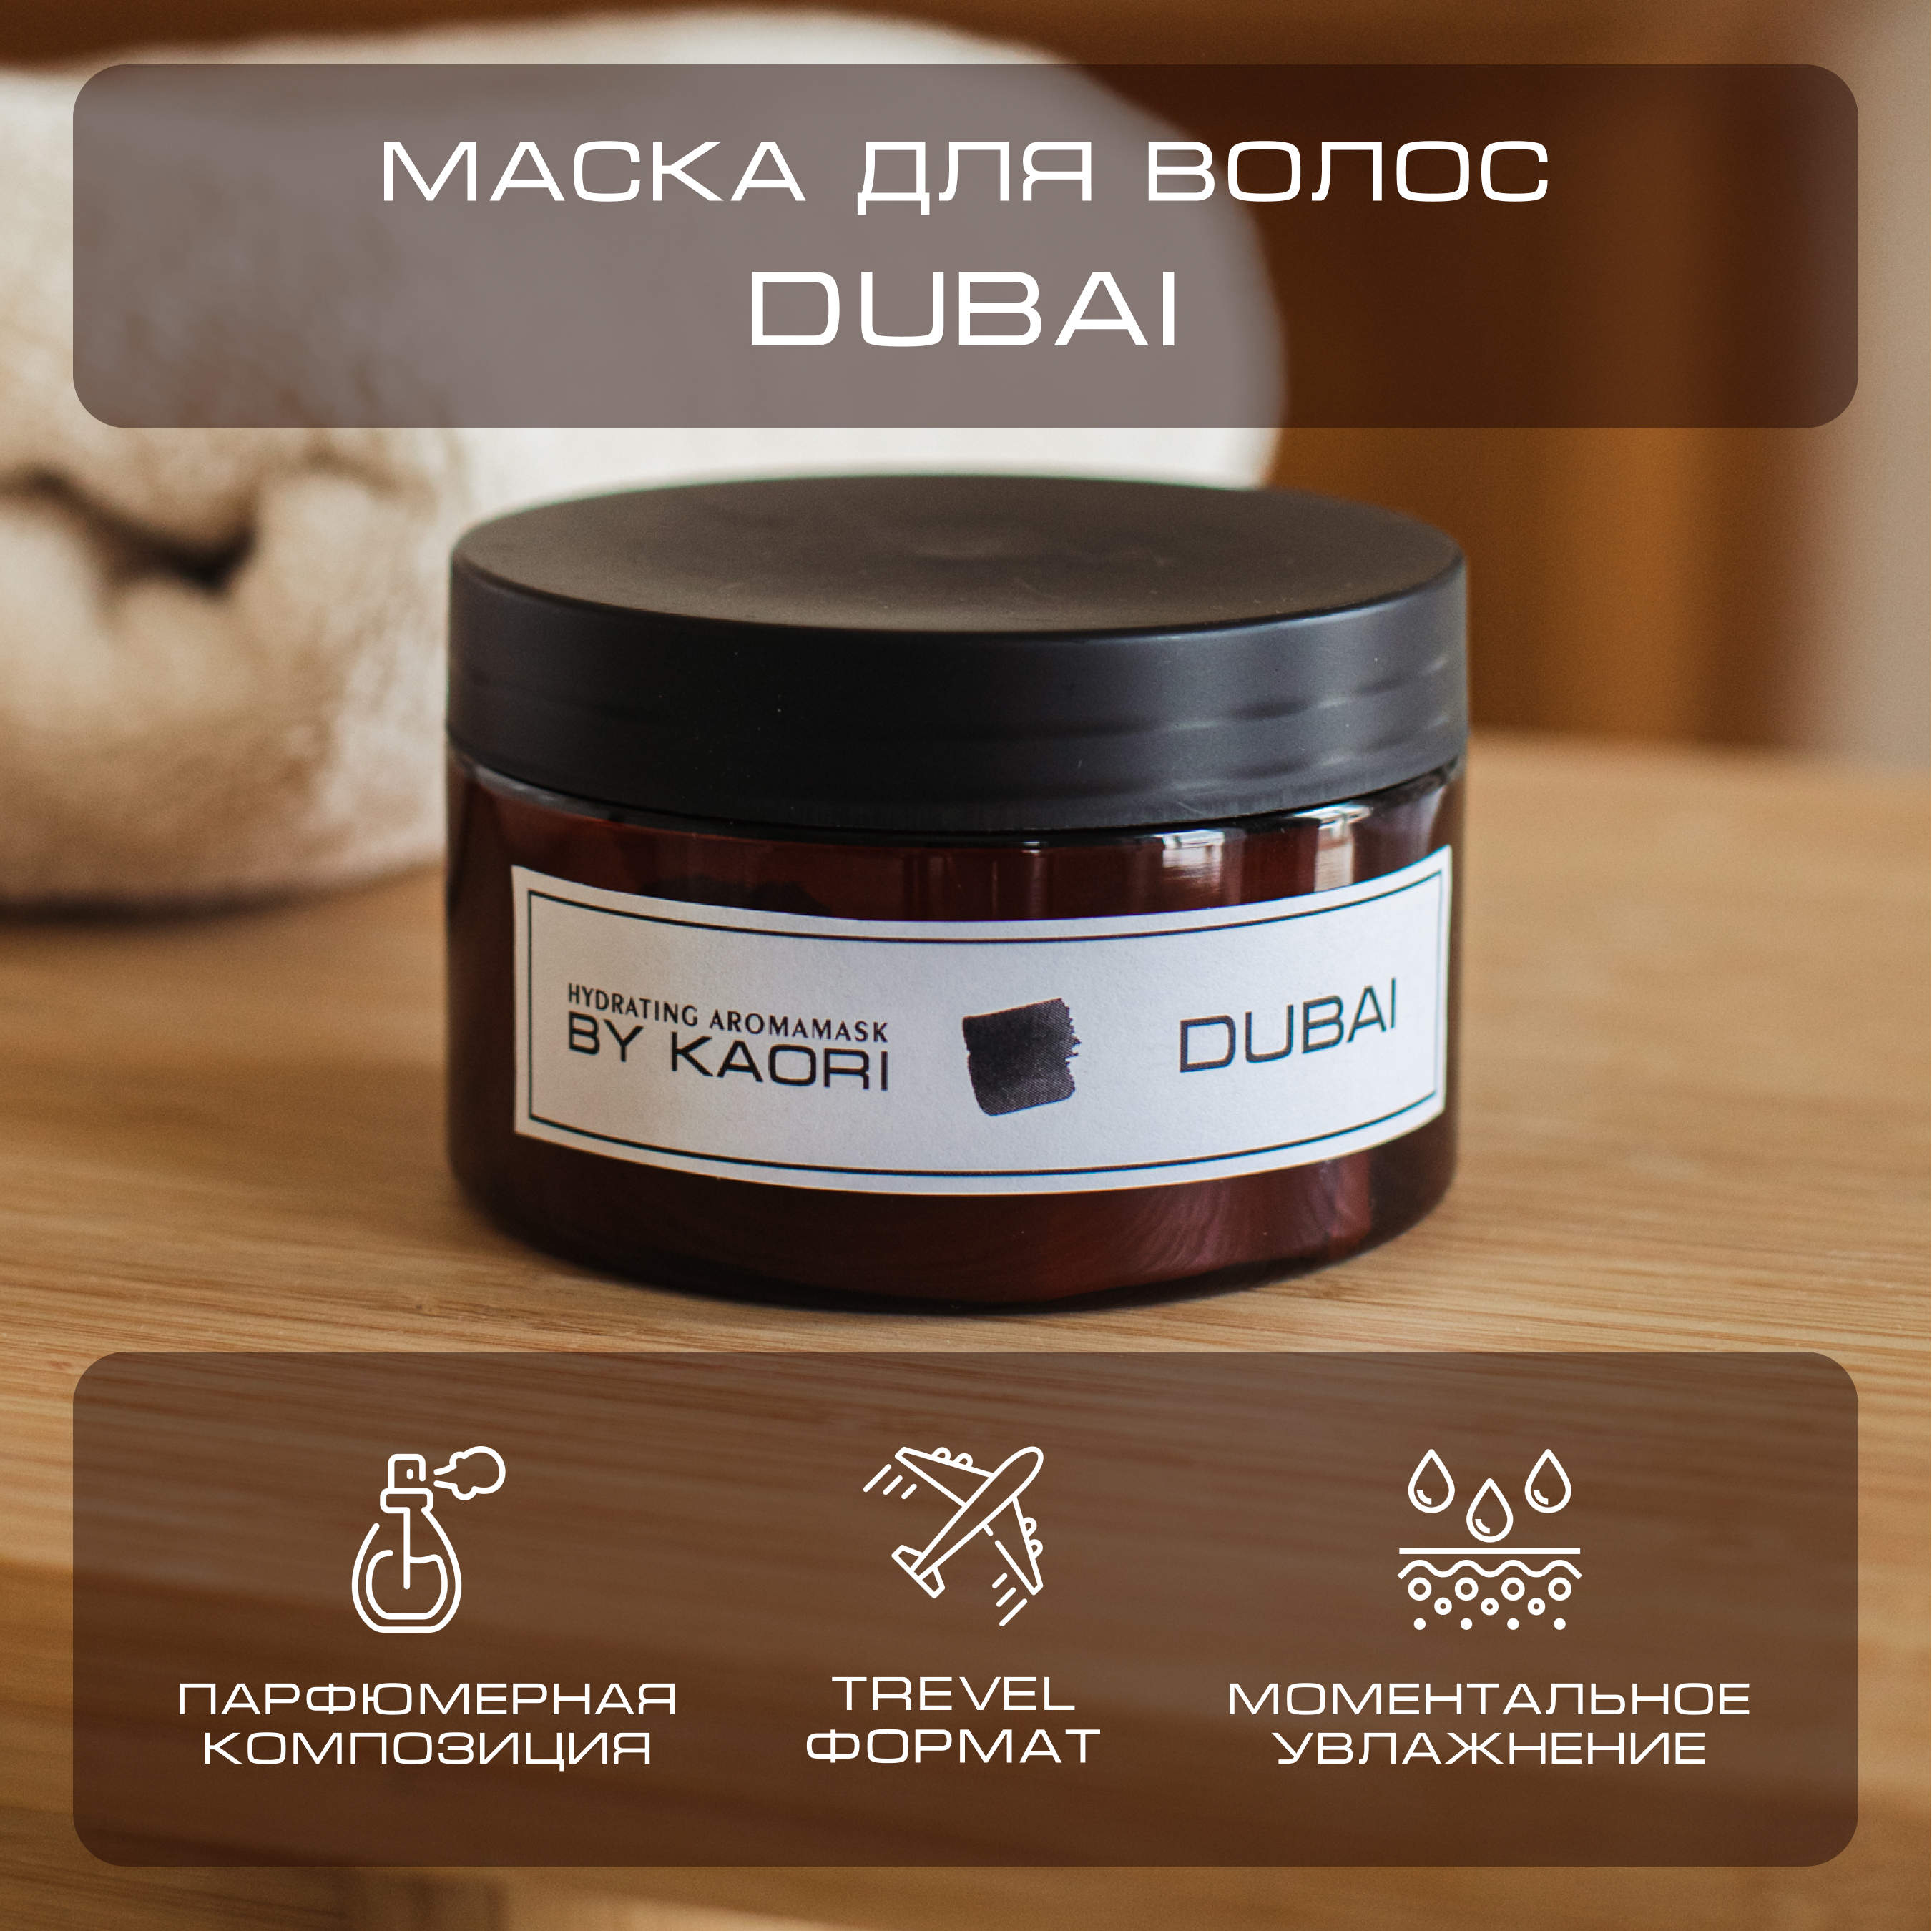 Интенсивная питательная маска для волос By Kaori тревел-формат аромат Dubai 100 мл lunaline питательная маска для роста и укрепления волос с активными био компонентами 300